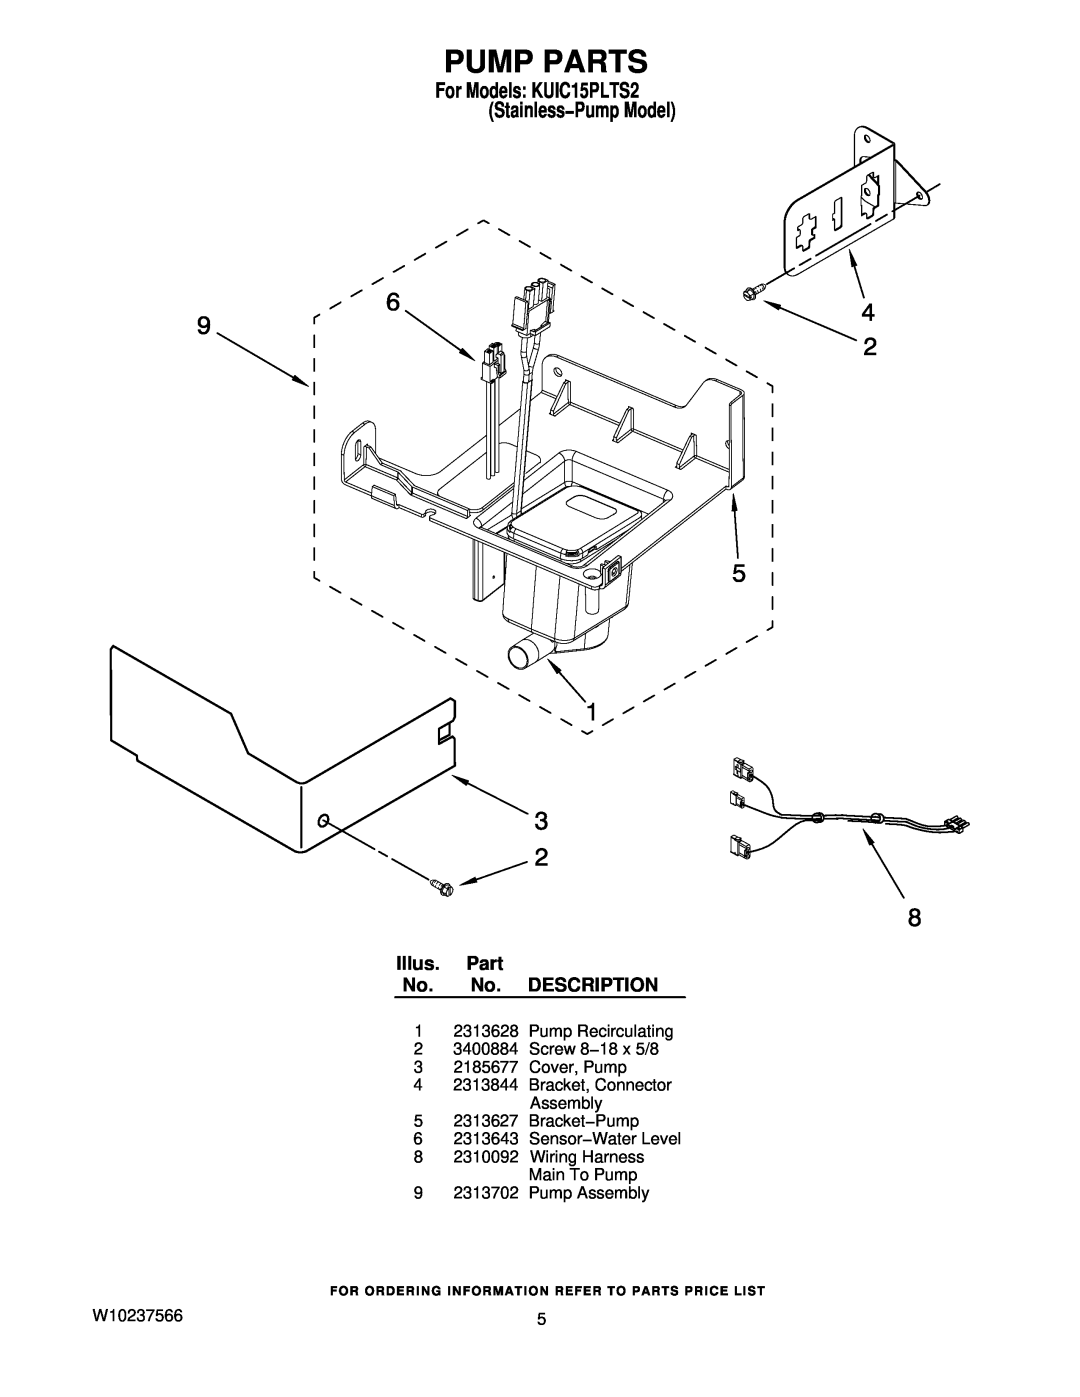 KitchenAid manual Pump Parts, Illus. Part No. No. DESCRIPTION, For Models KUIC15PLTS2 Stainless−Pump Model 